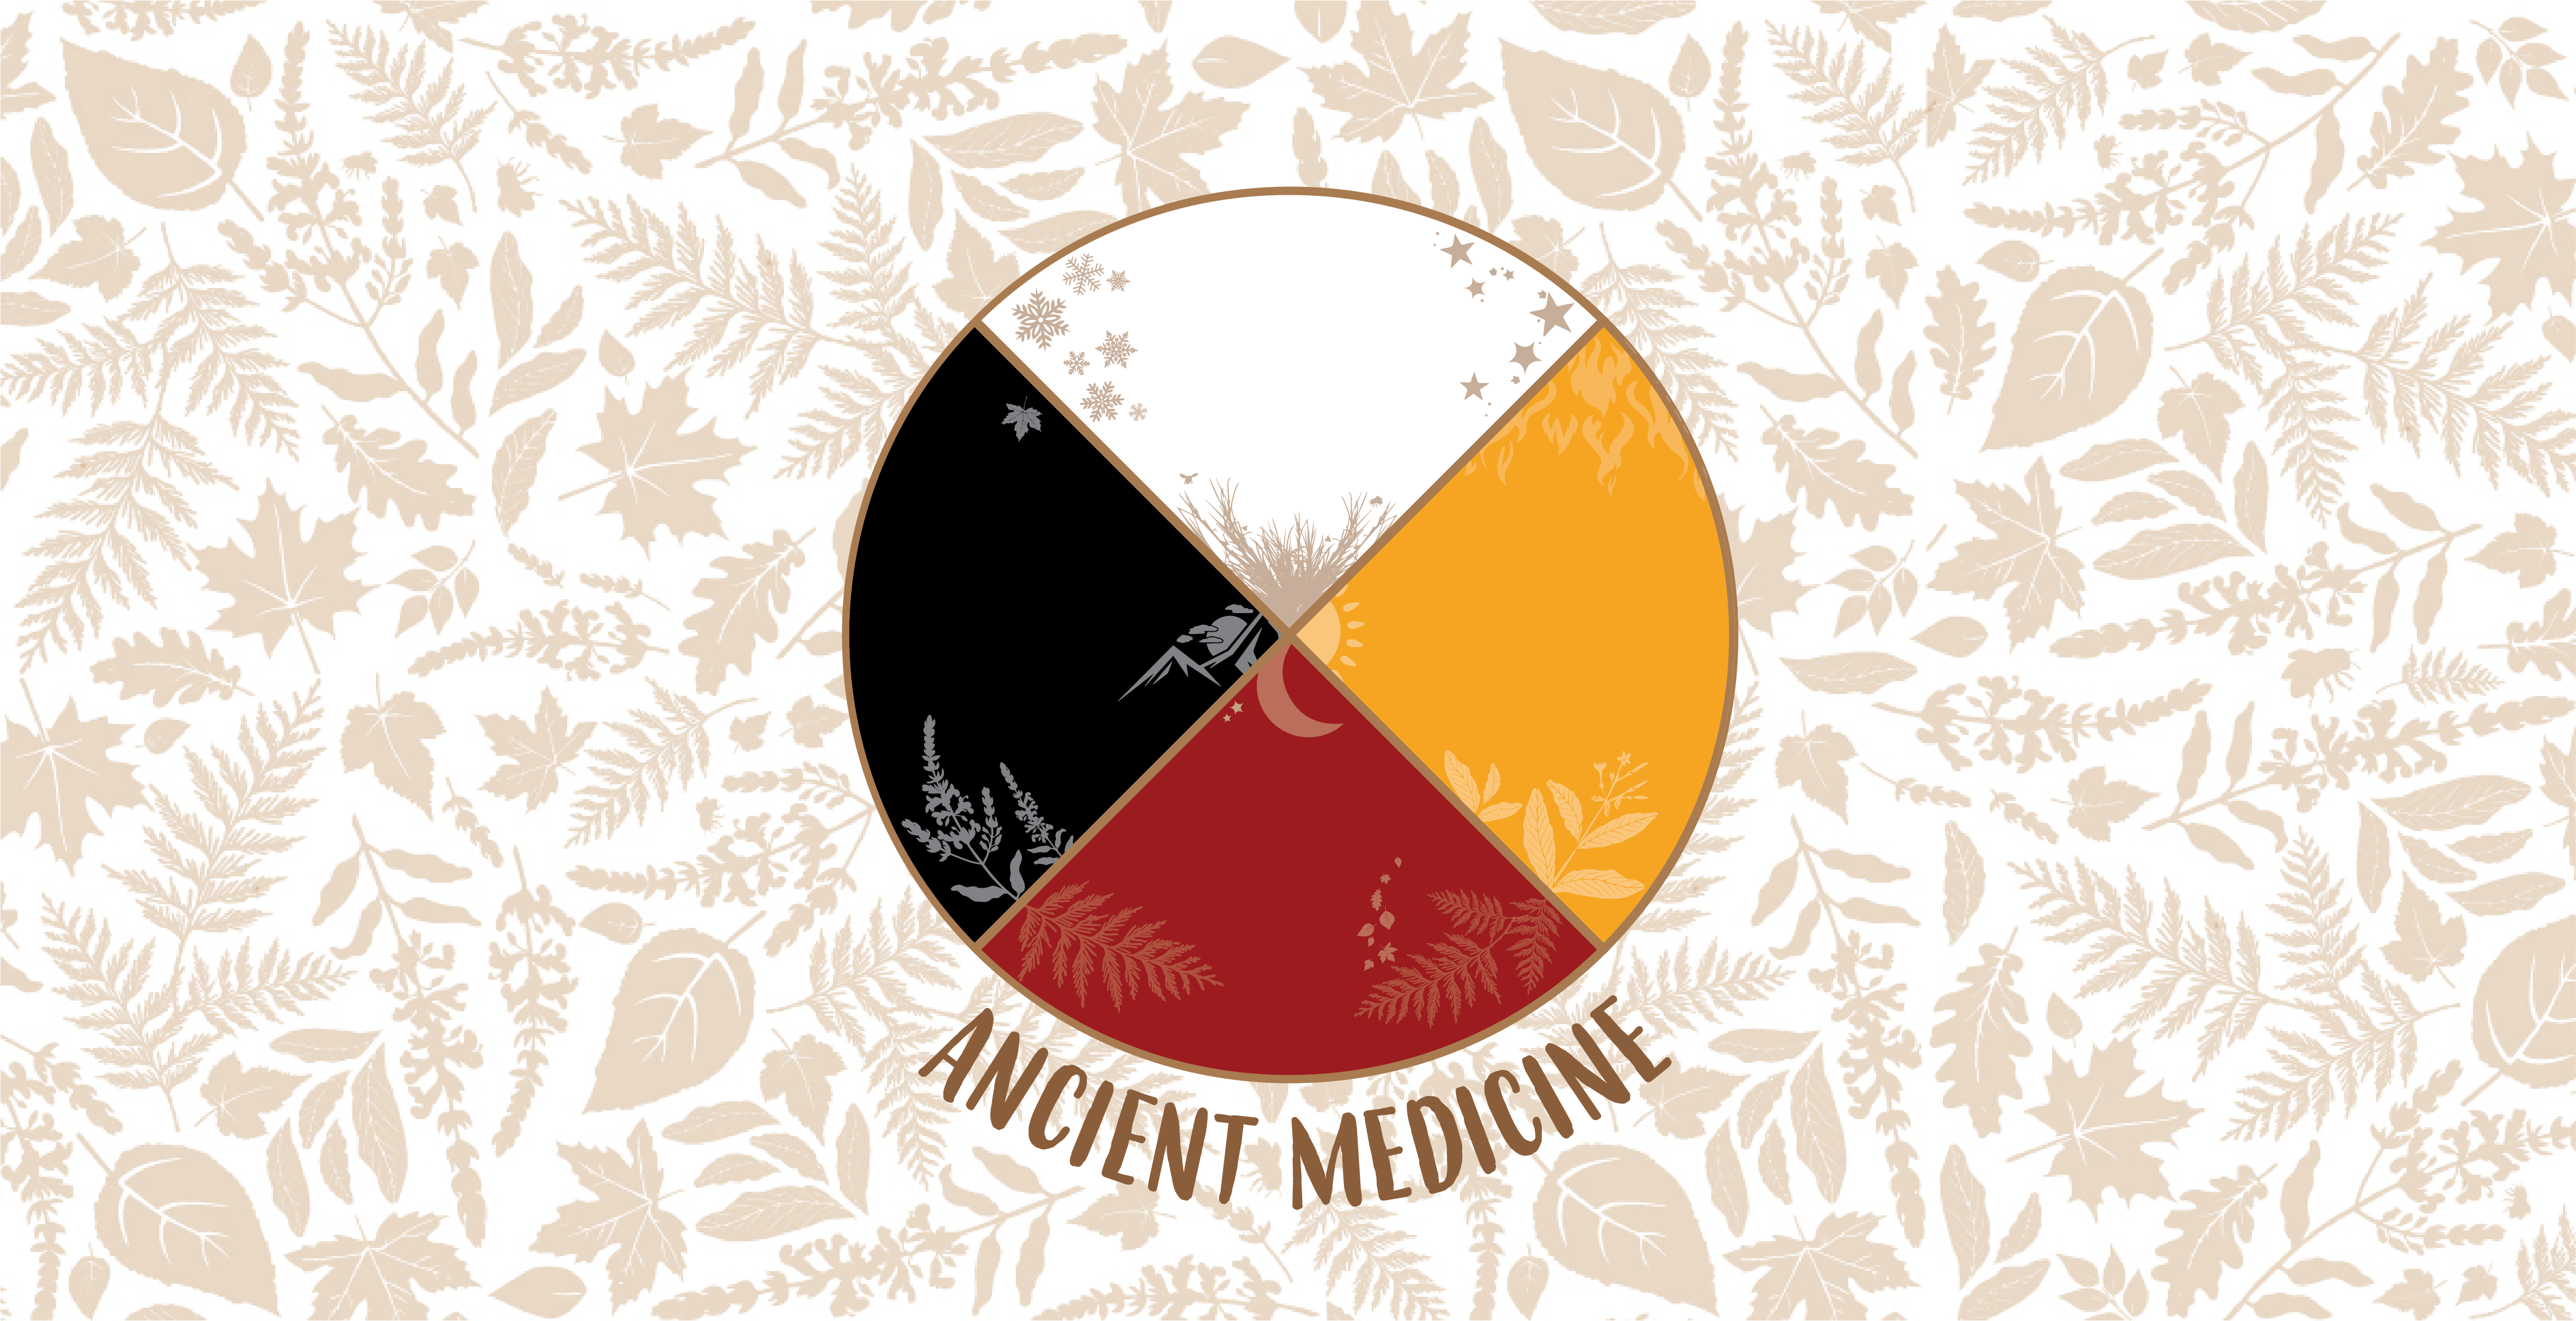 Ancient Medicine 2